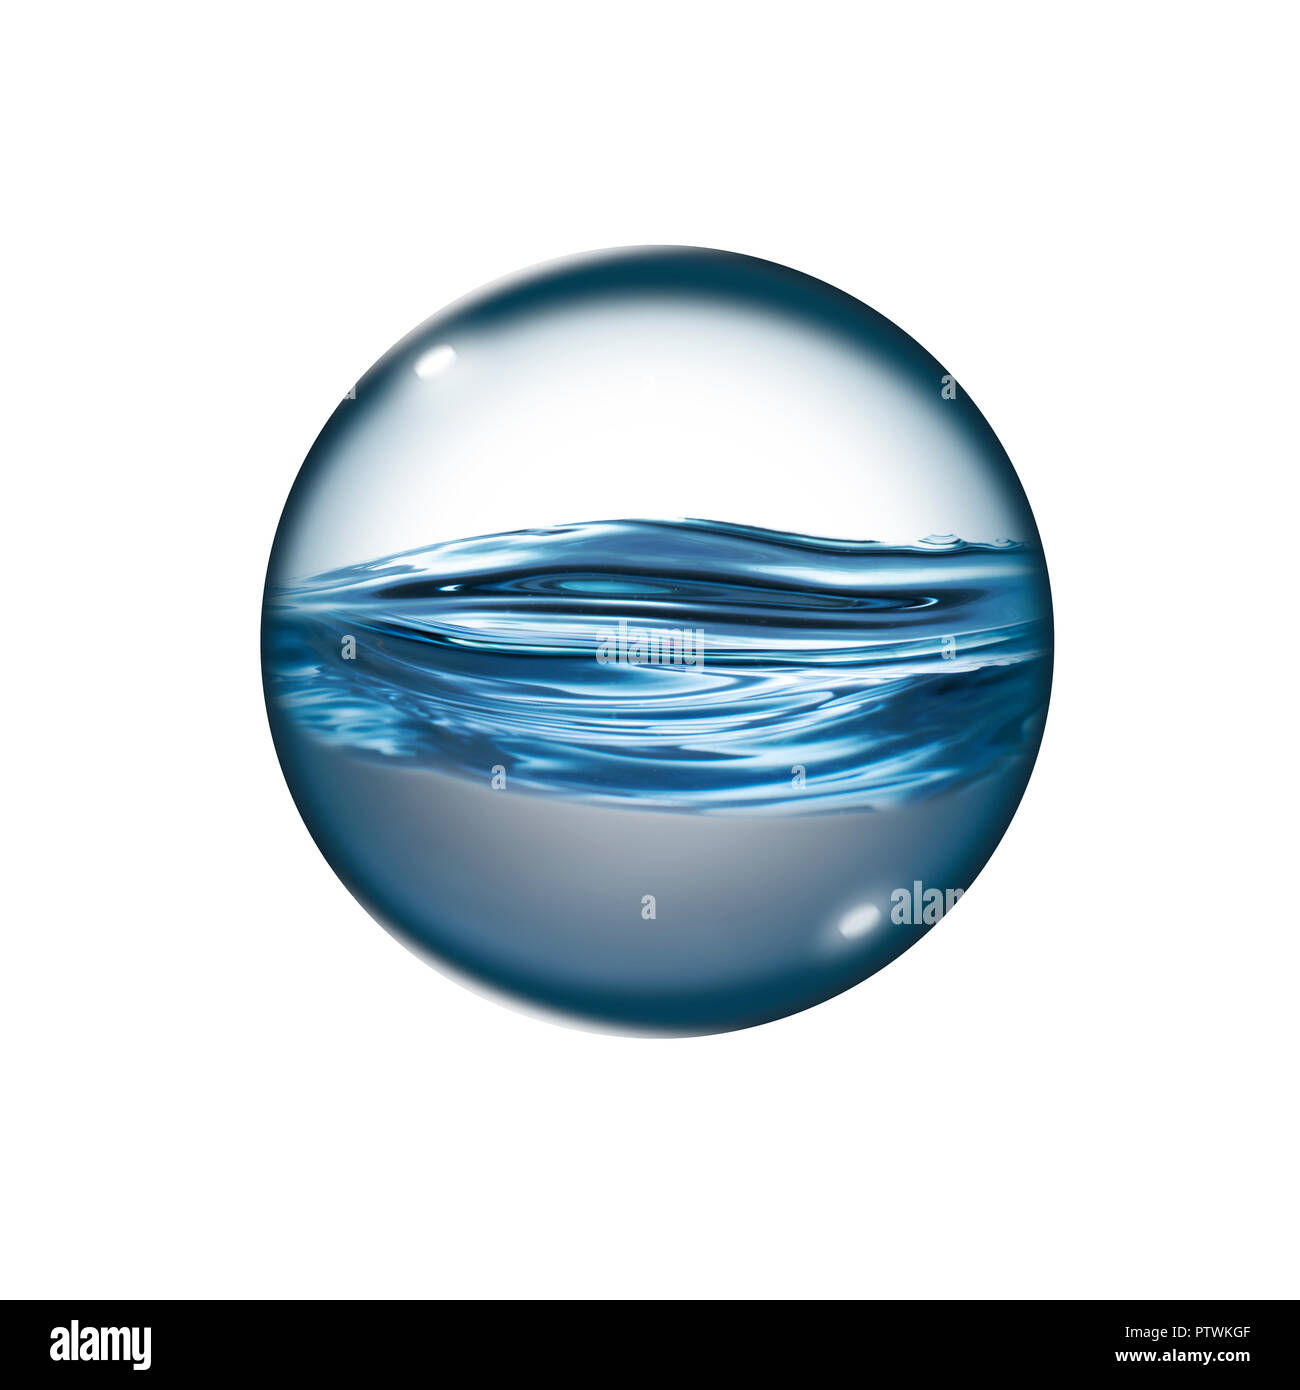 Transparent liquid in sphere against plain white background, digital composite Stock Photo